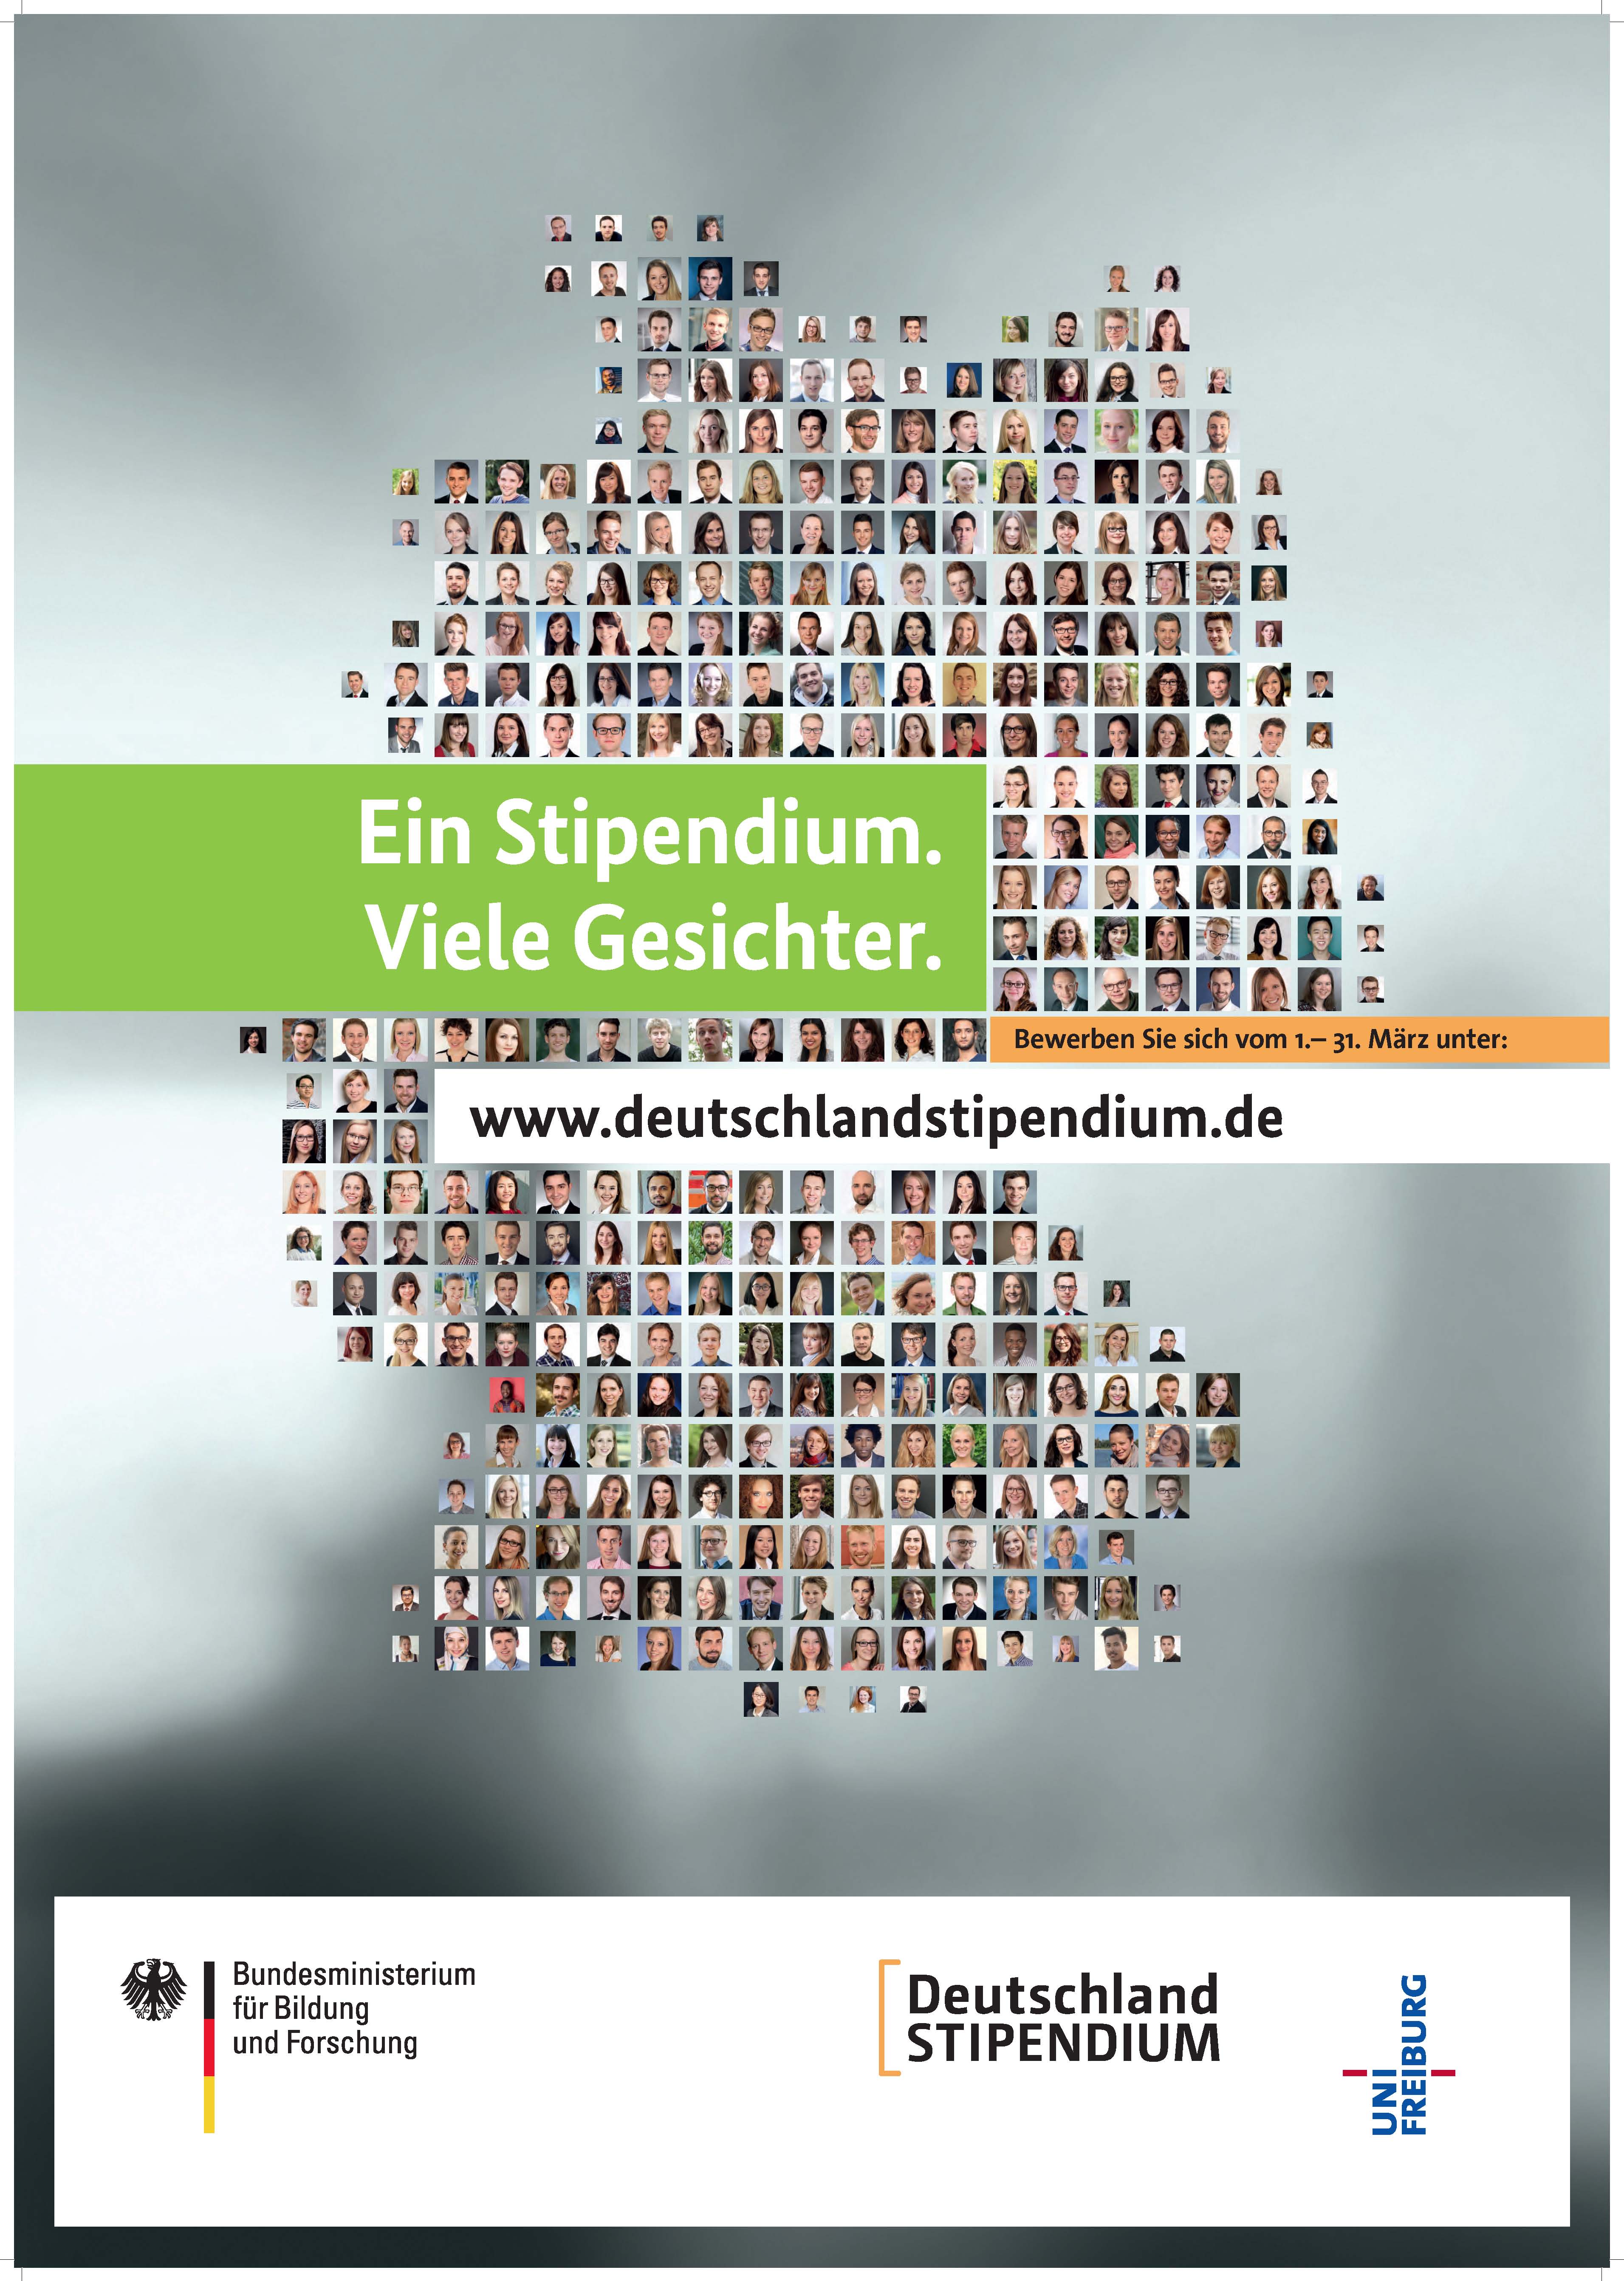 15 Deutschlandstipendien (Germany Scholarship) exklusiv nur für Studierende der Fakultät für Umwelt und Natürliche Ressourcen, weitere sind möglich! (04.03.2021)